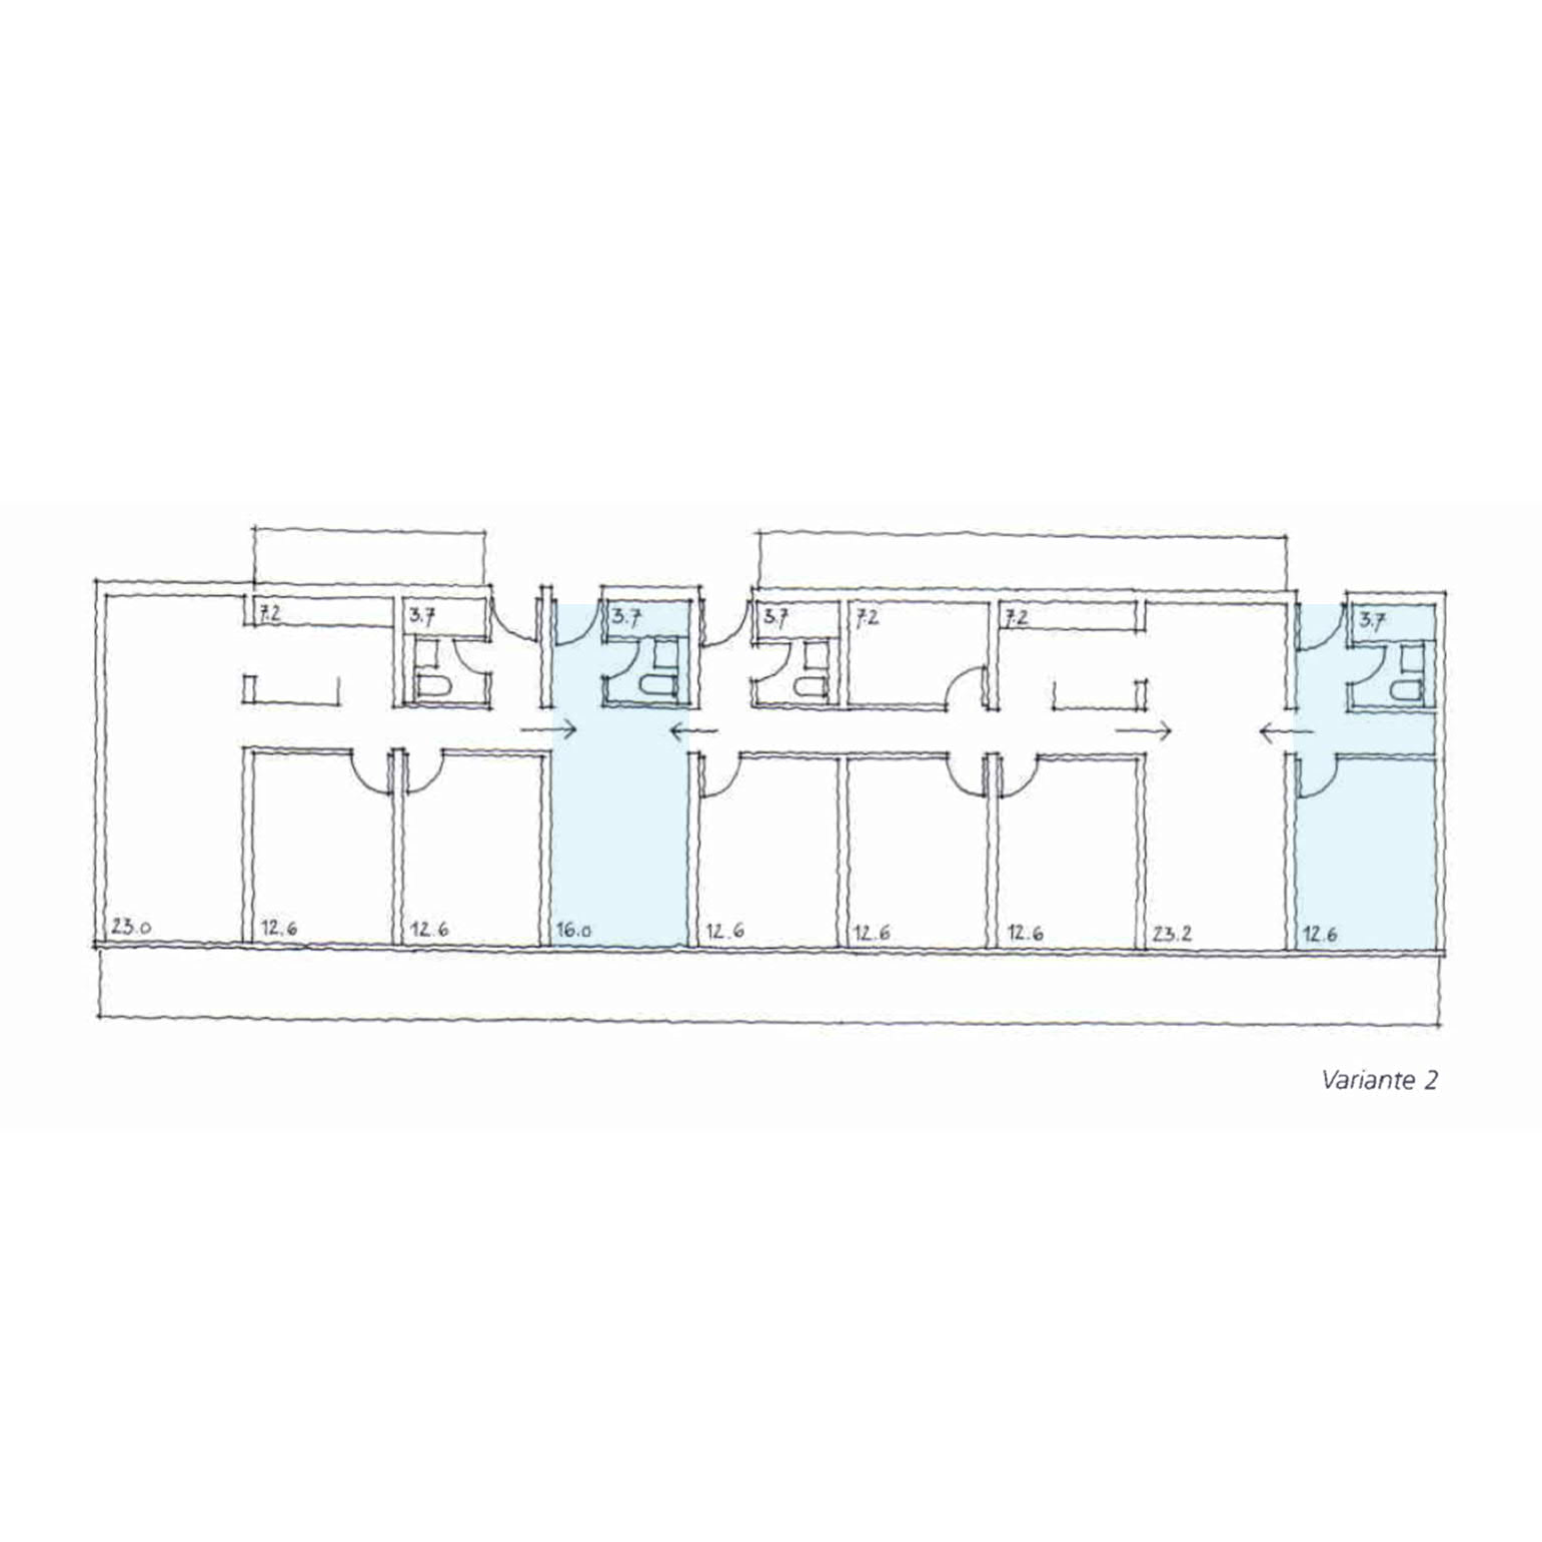 Ackermannbogen, Grundriss mit Einliegerwohnungen, farbig markiert